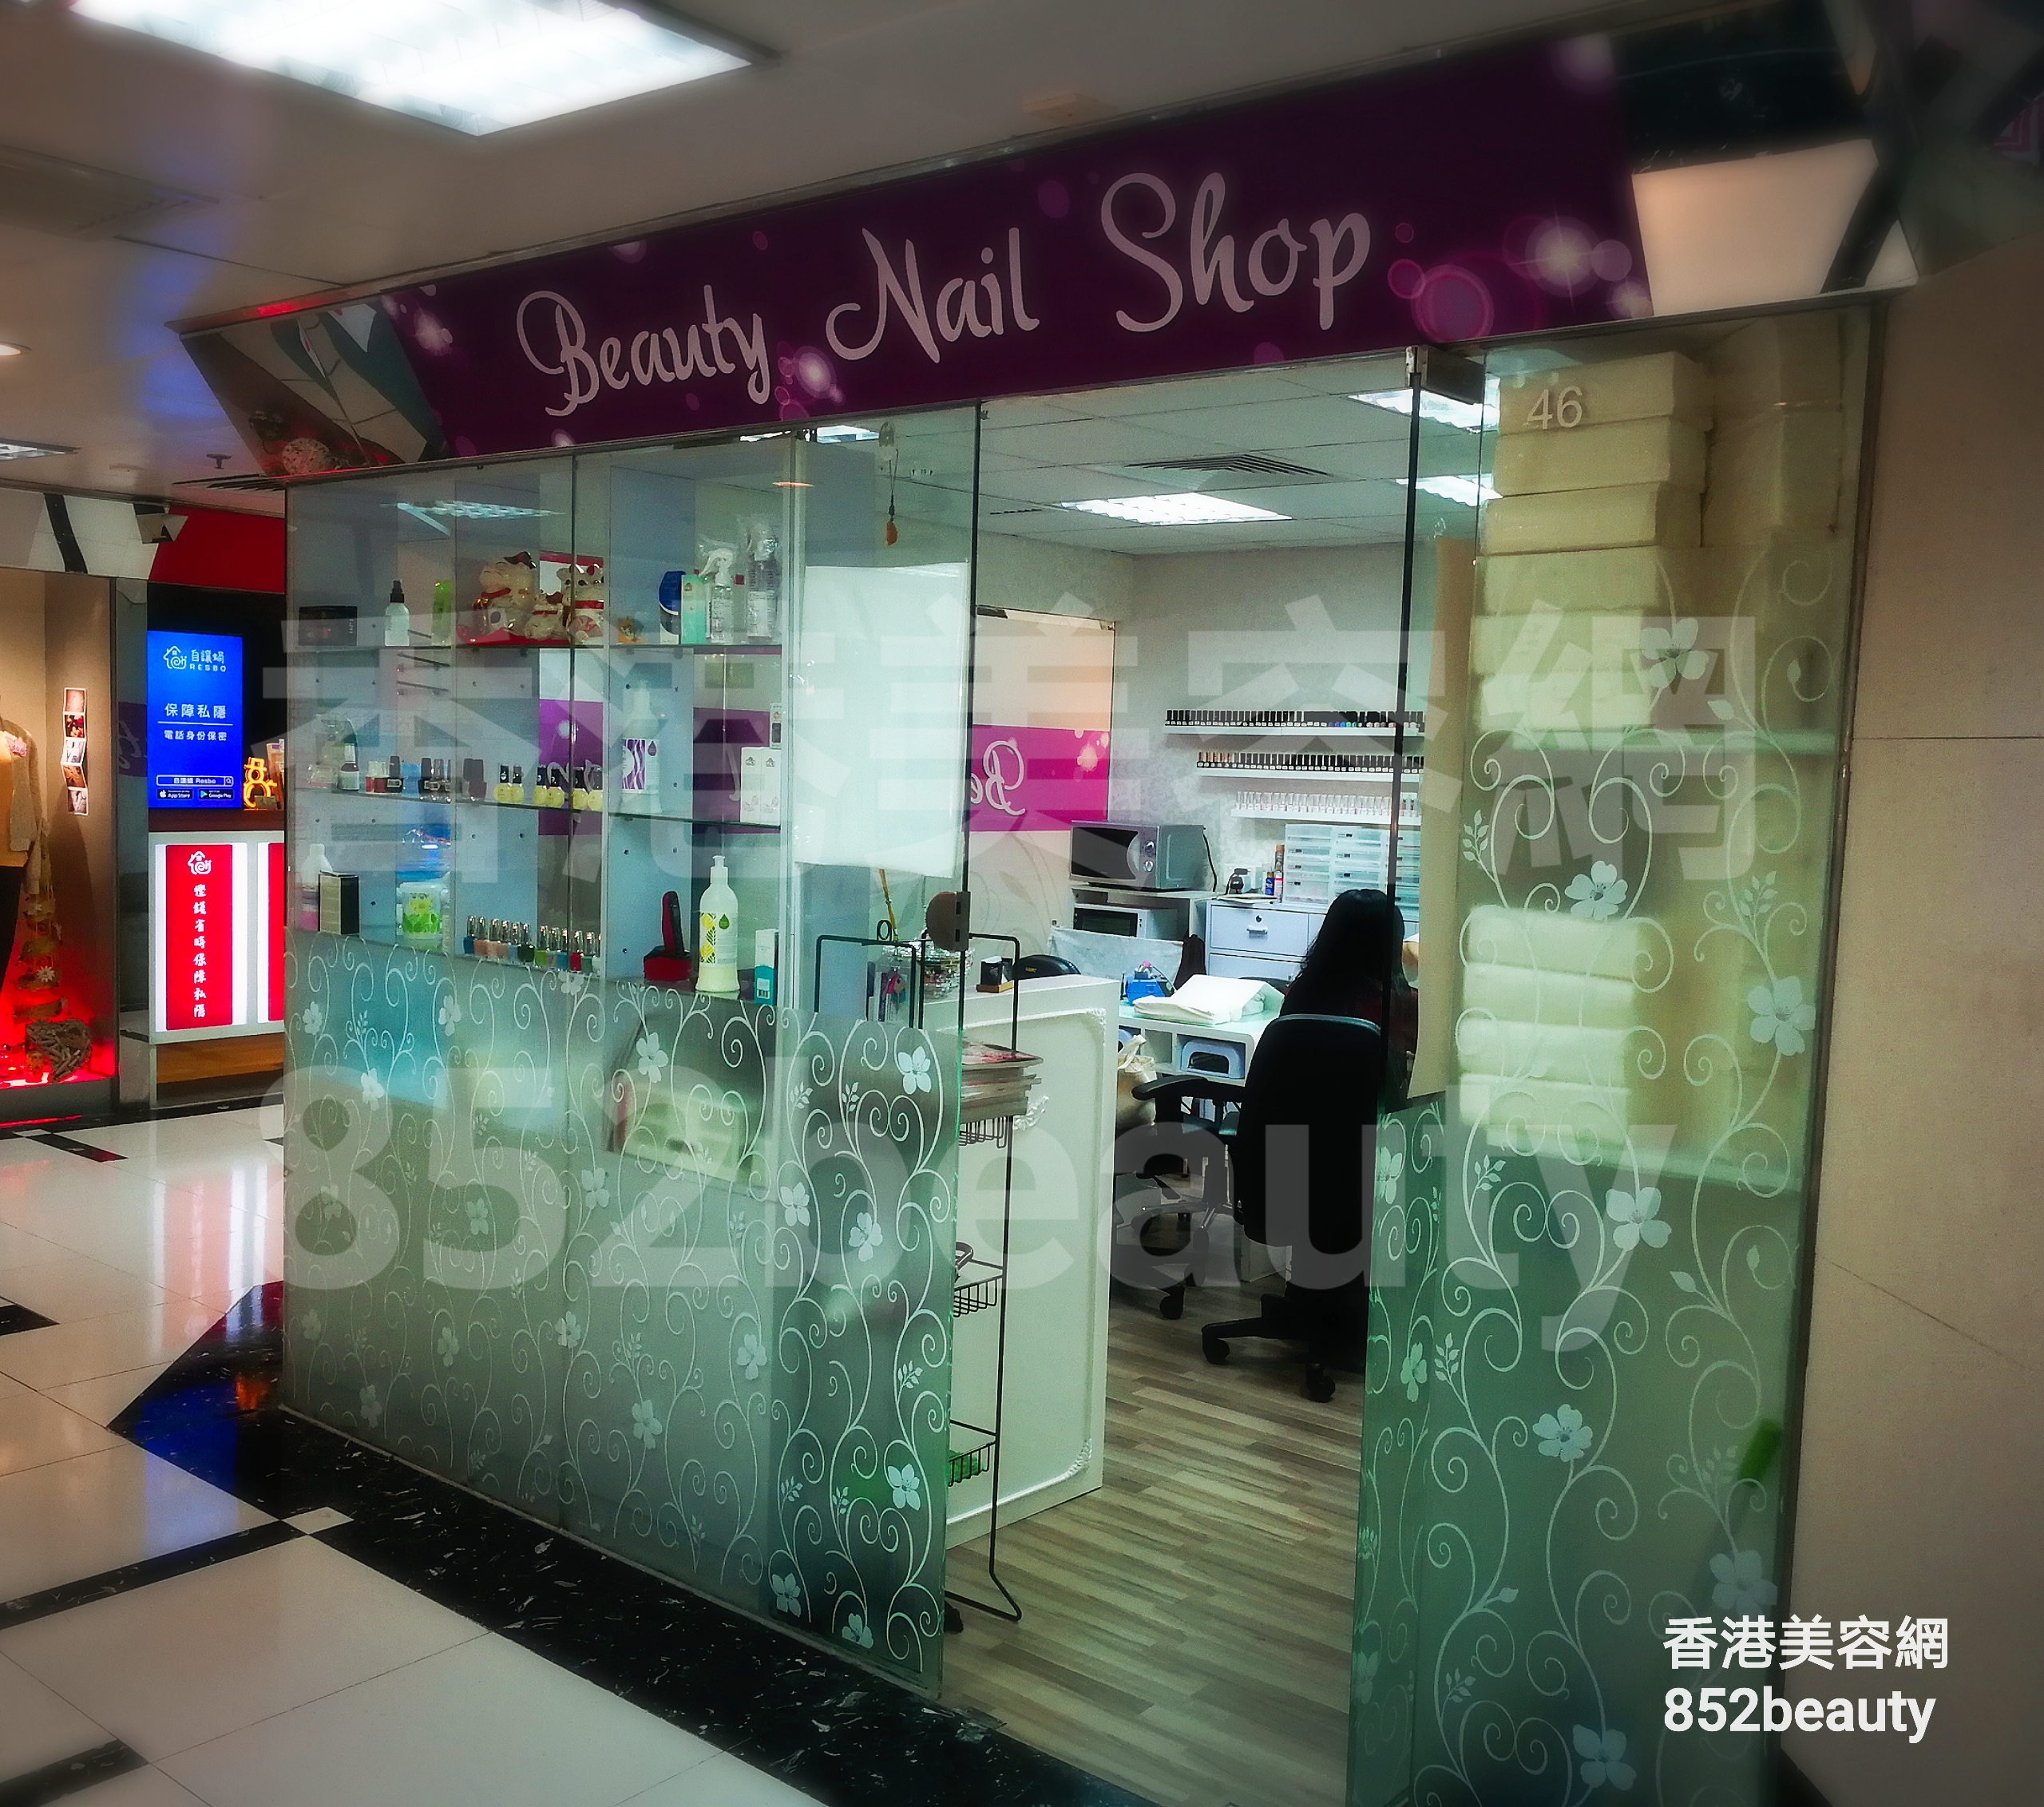 美甲: Beauty Nail Shop